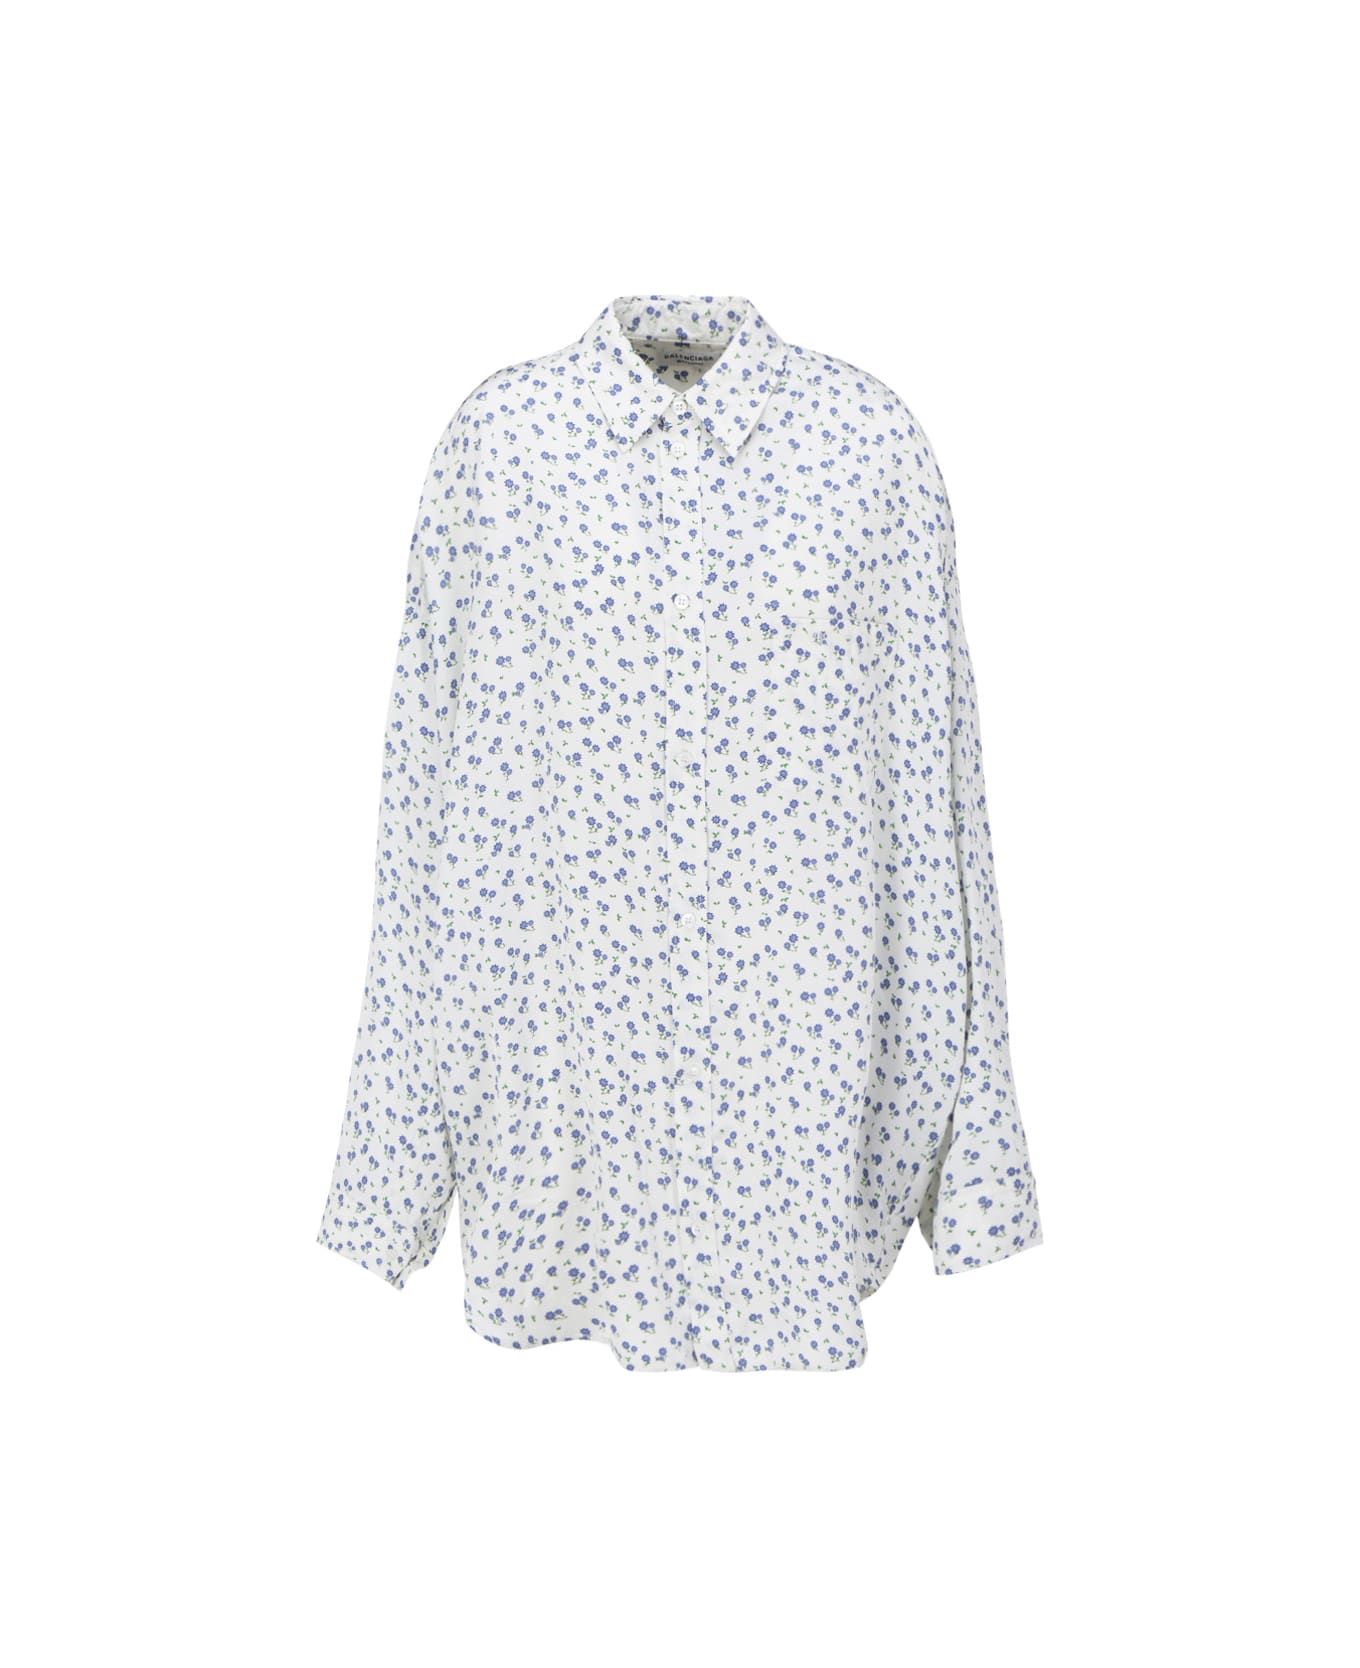 Balenciaga Shirt - White/blue